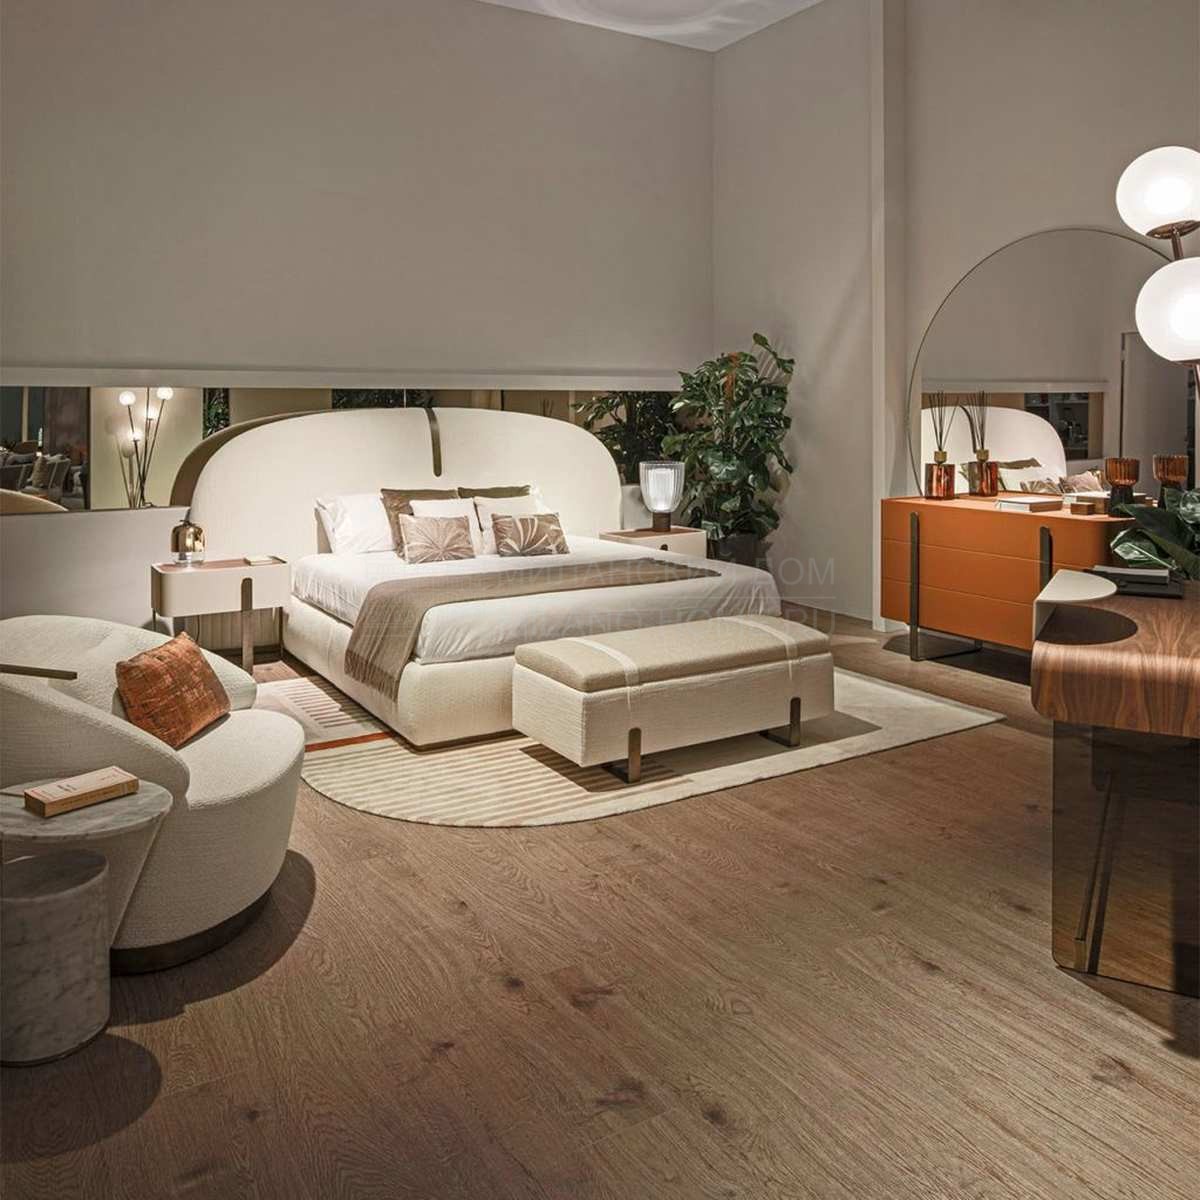 Двуспальная кровать Suite bed capital collection из Италии фабрики CAPITAL Collection